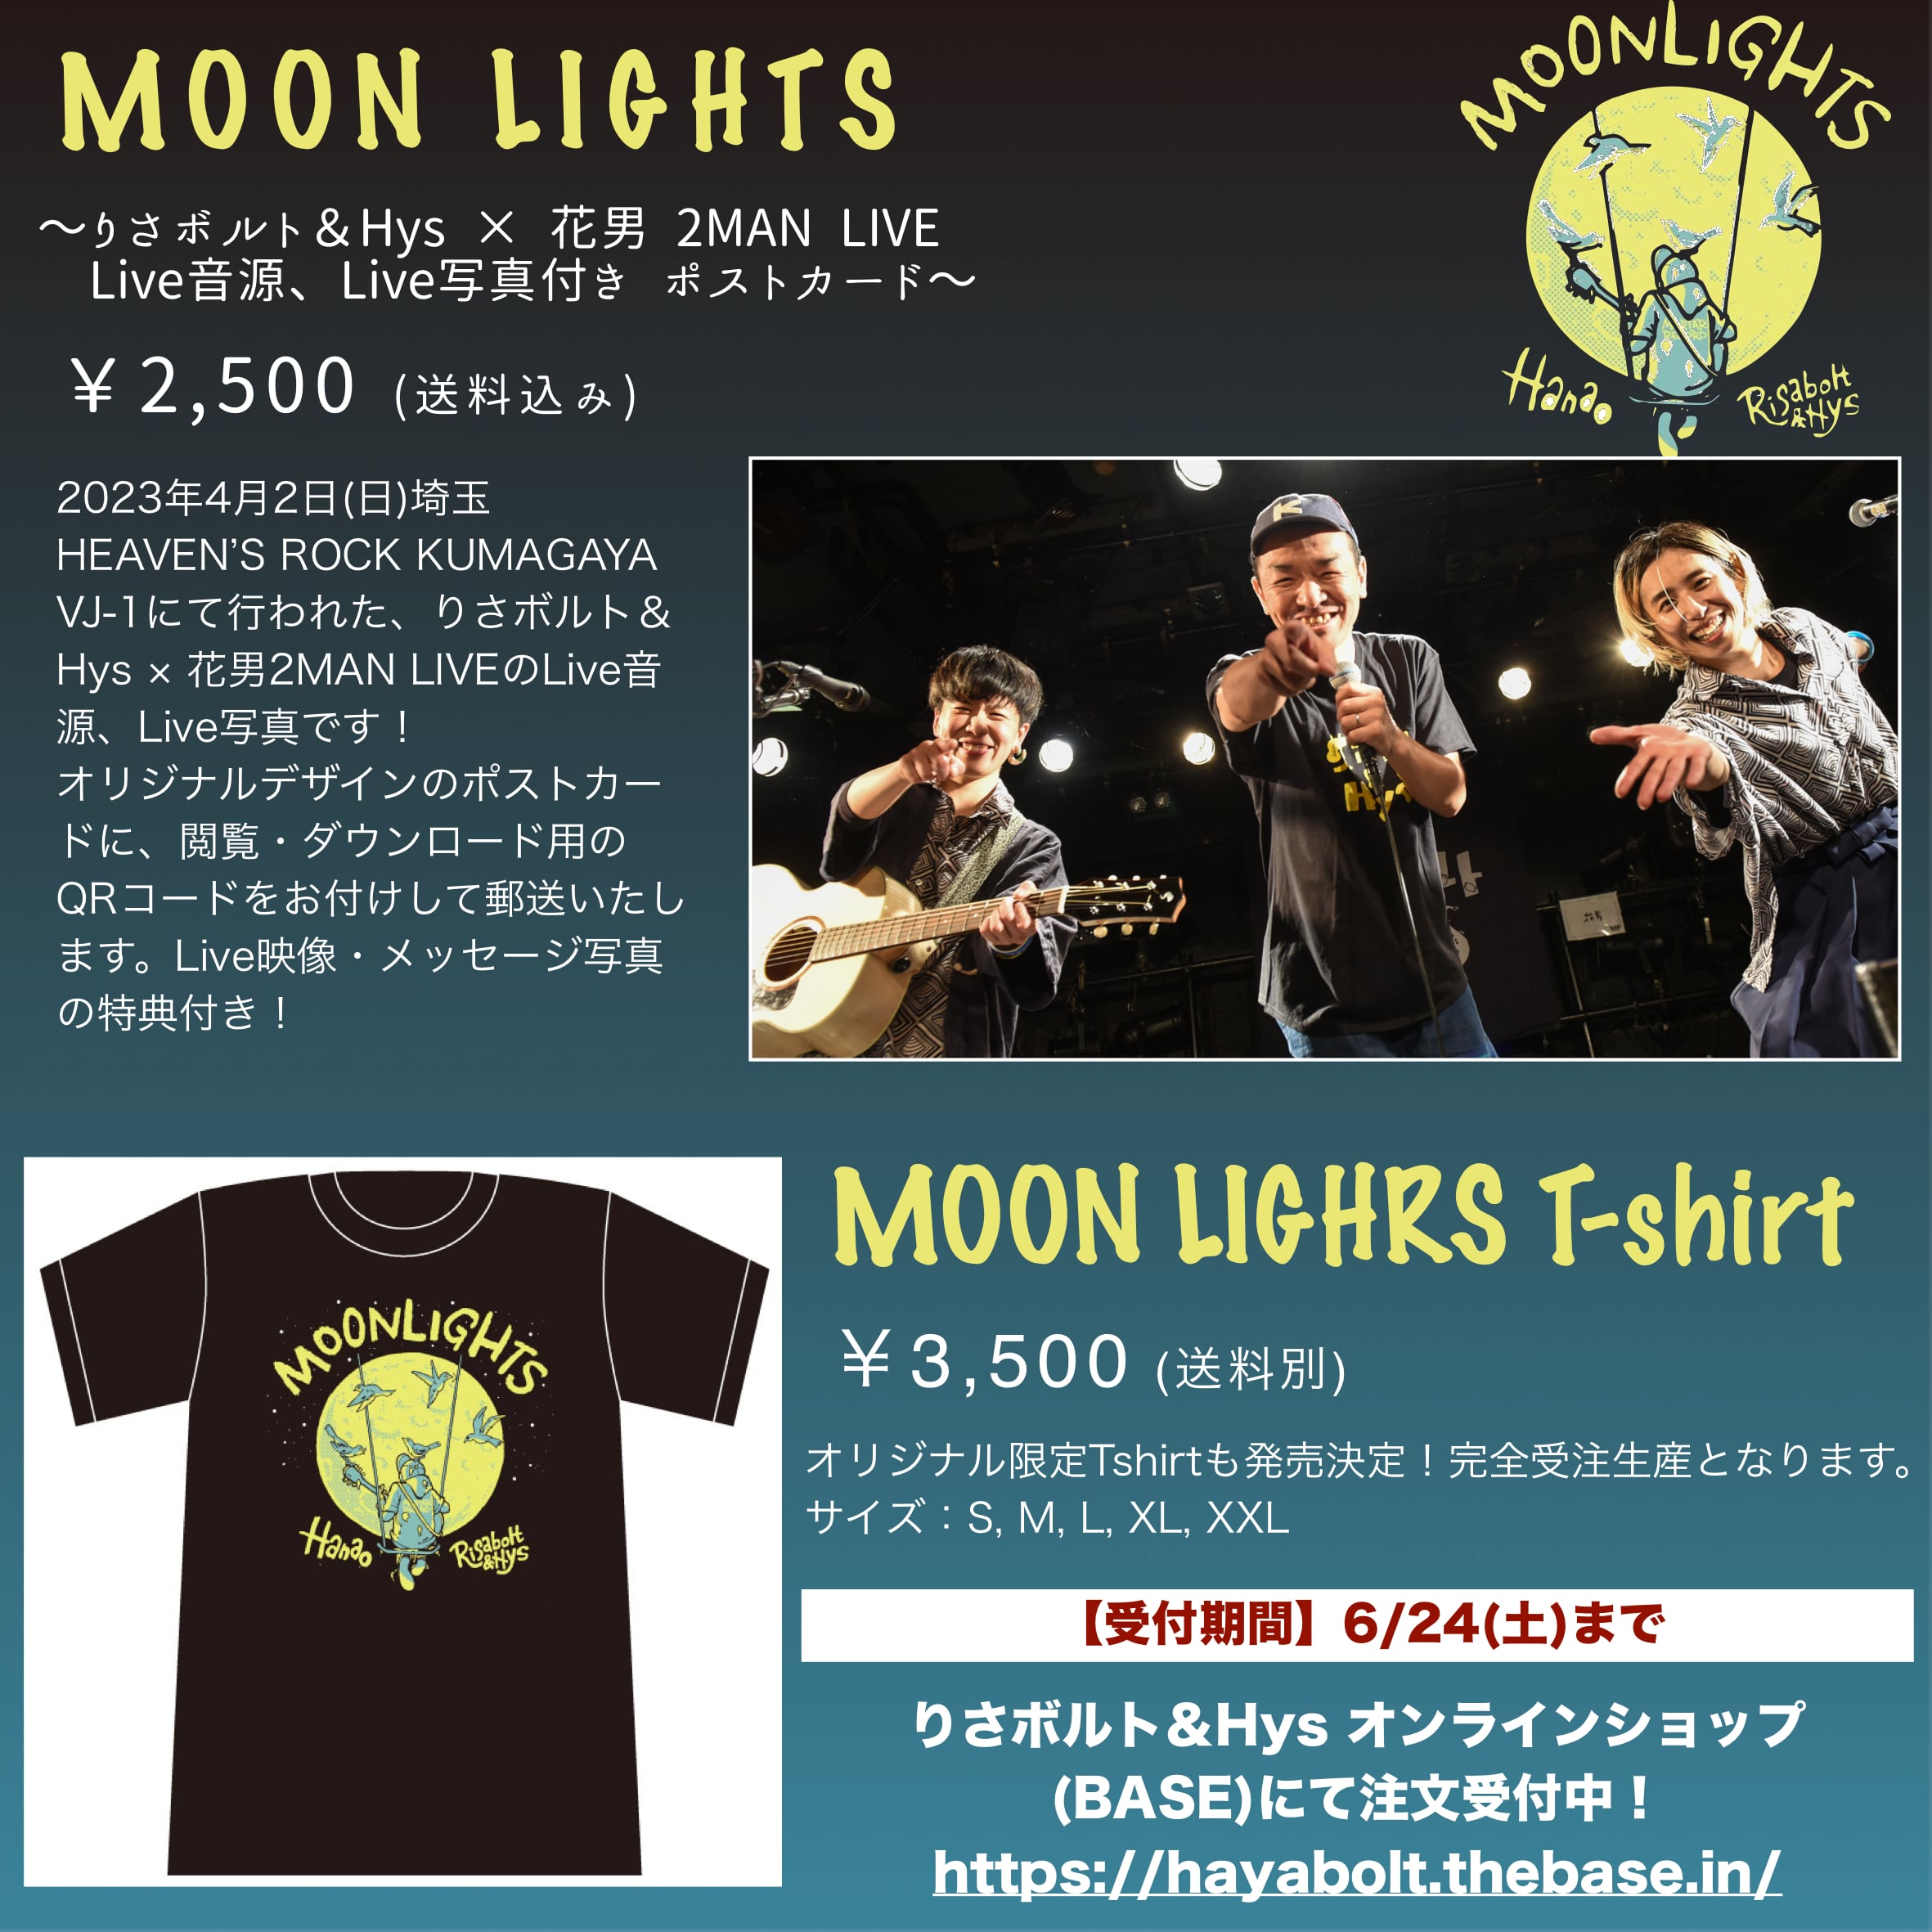 花男×りさボルト&Hys【MOON LIGHTS】〜Live音源&Live写真付きポスト 